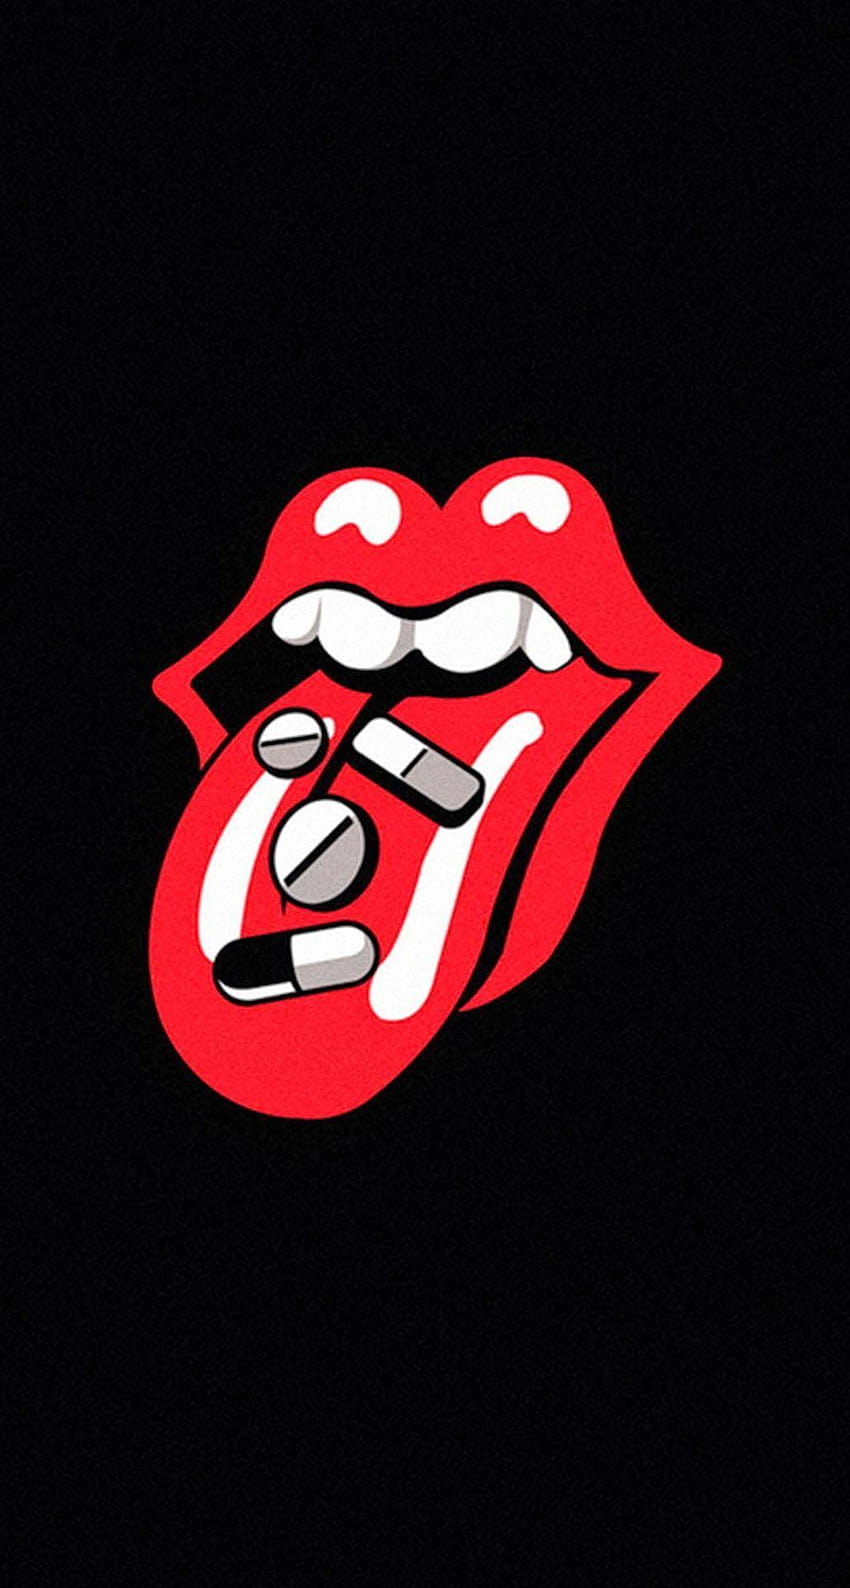 Rolling Stones Pil Lidah Obat iPhone 6 Plus, tanpa obat wallpaper ponsel HD